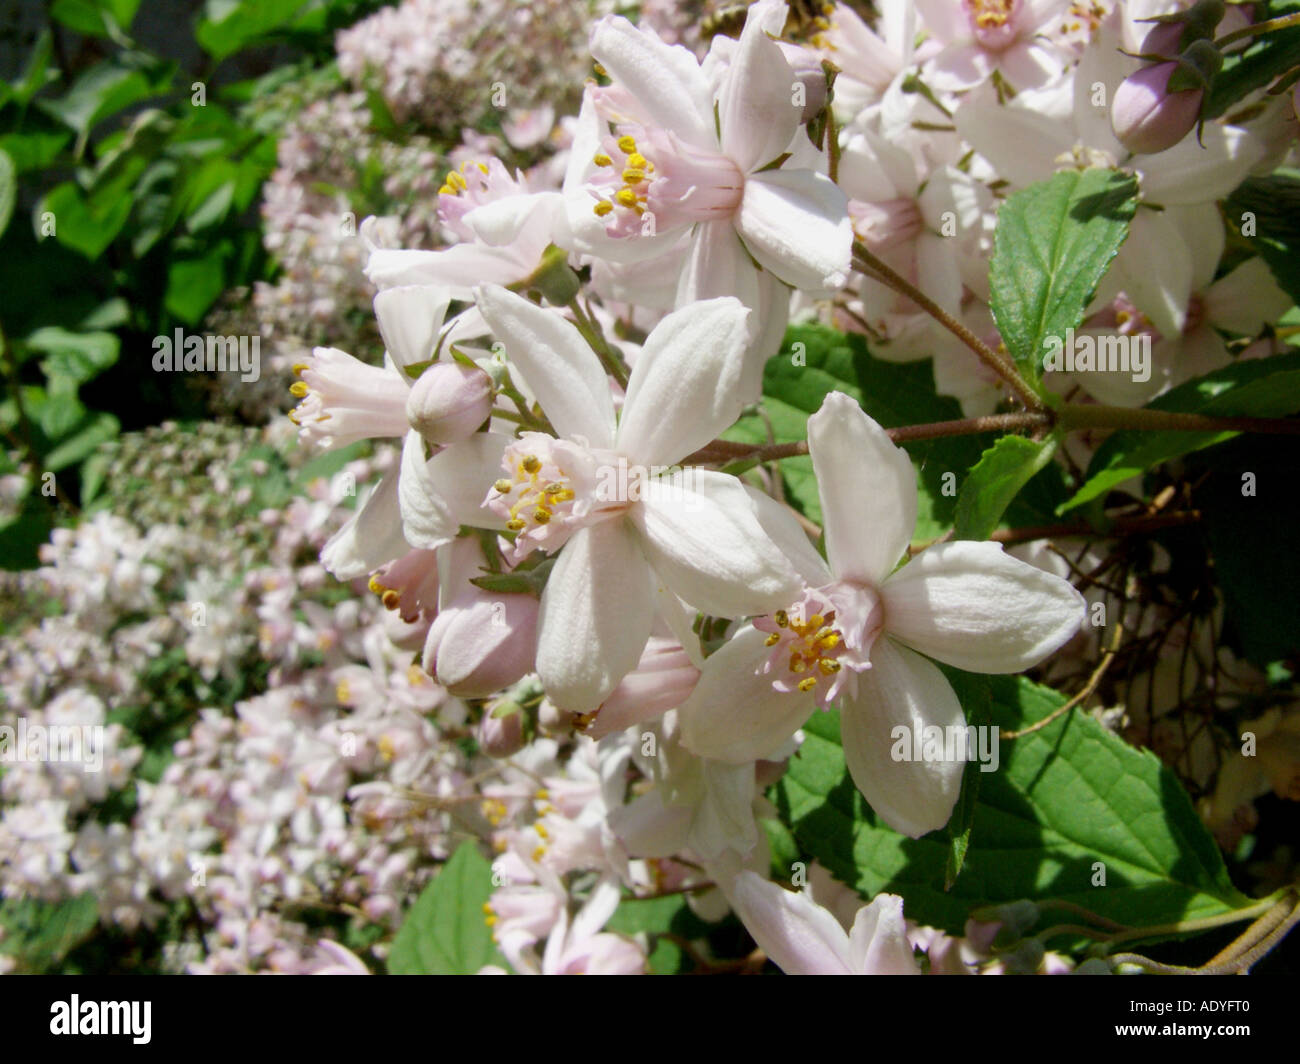 deutzia (Deutzia x elegantissima, Deutzia elegantissima, Deutzia purpurascens x Deutzia scabra), flowers Stock Photo